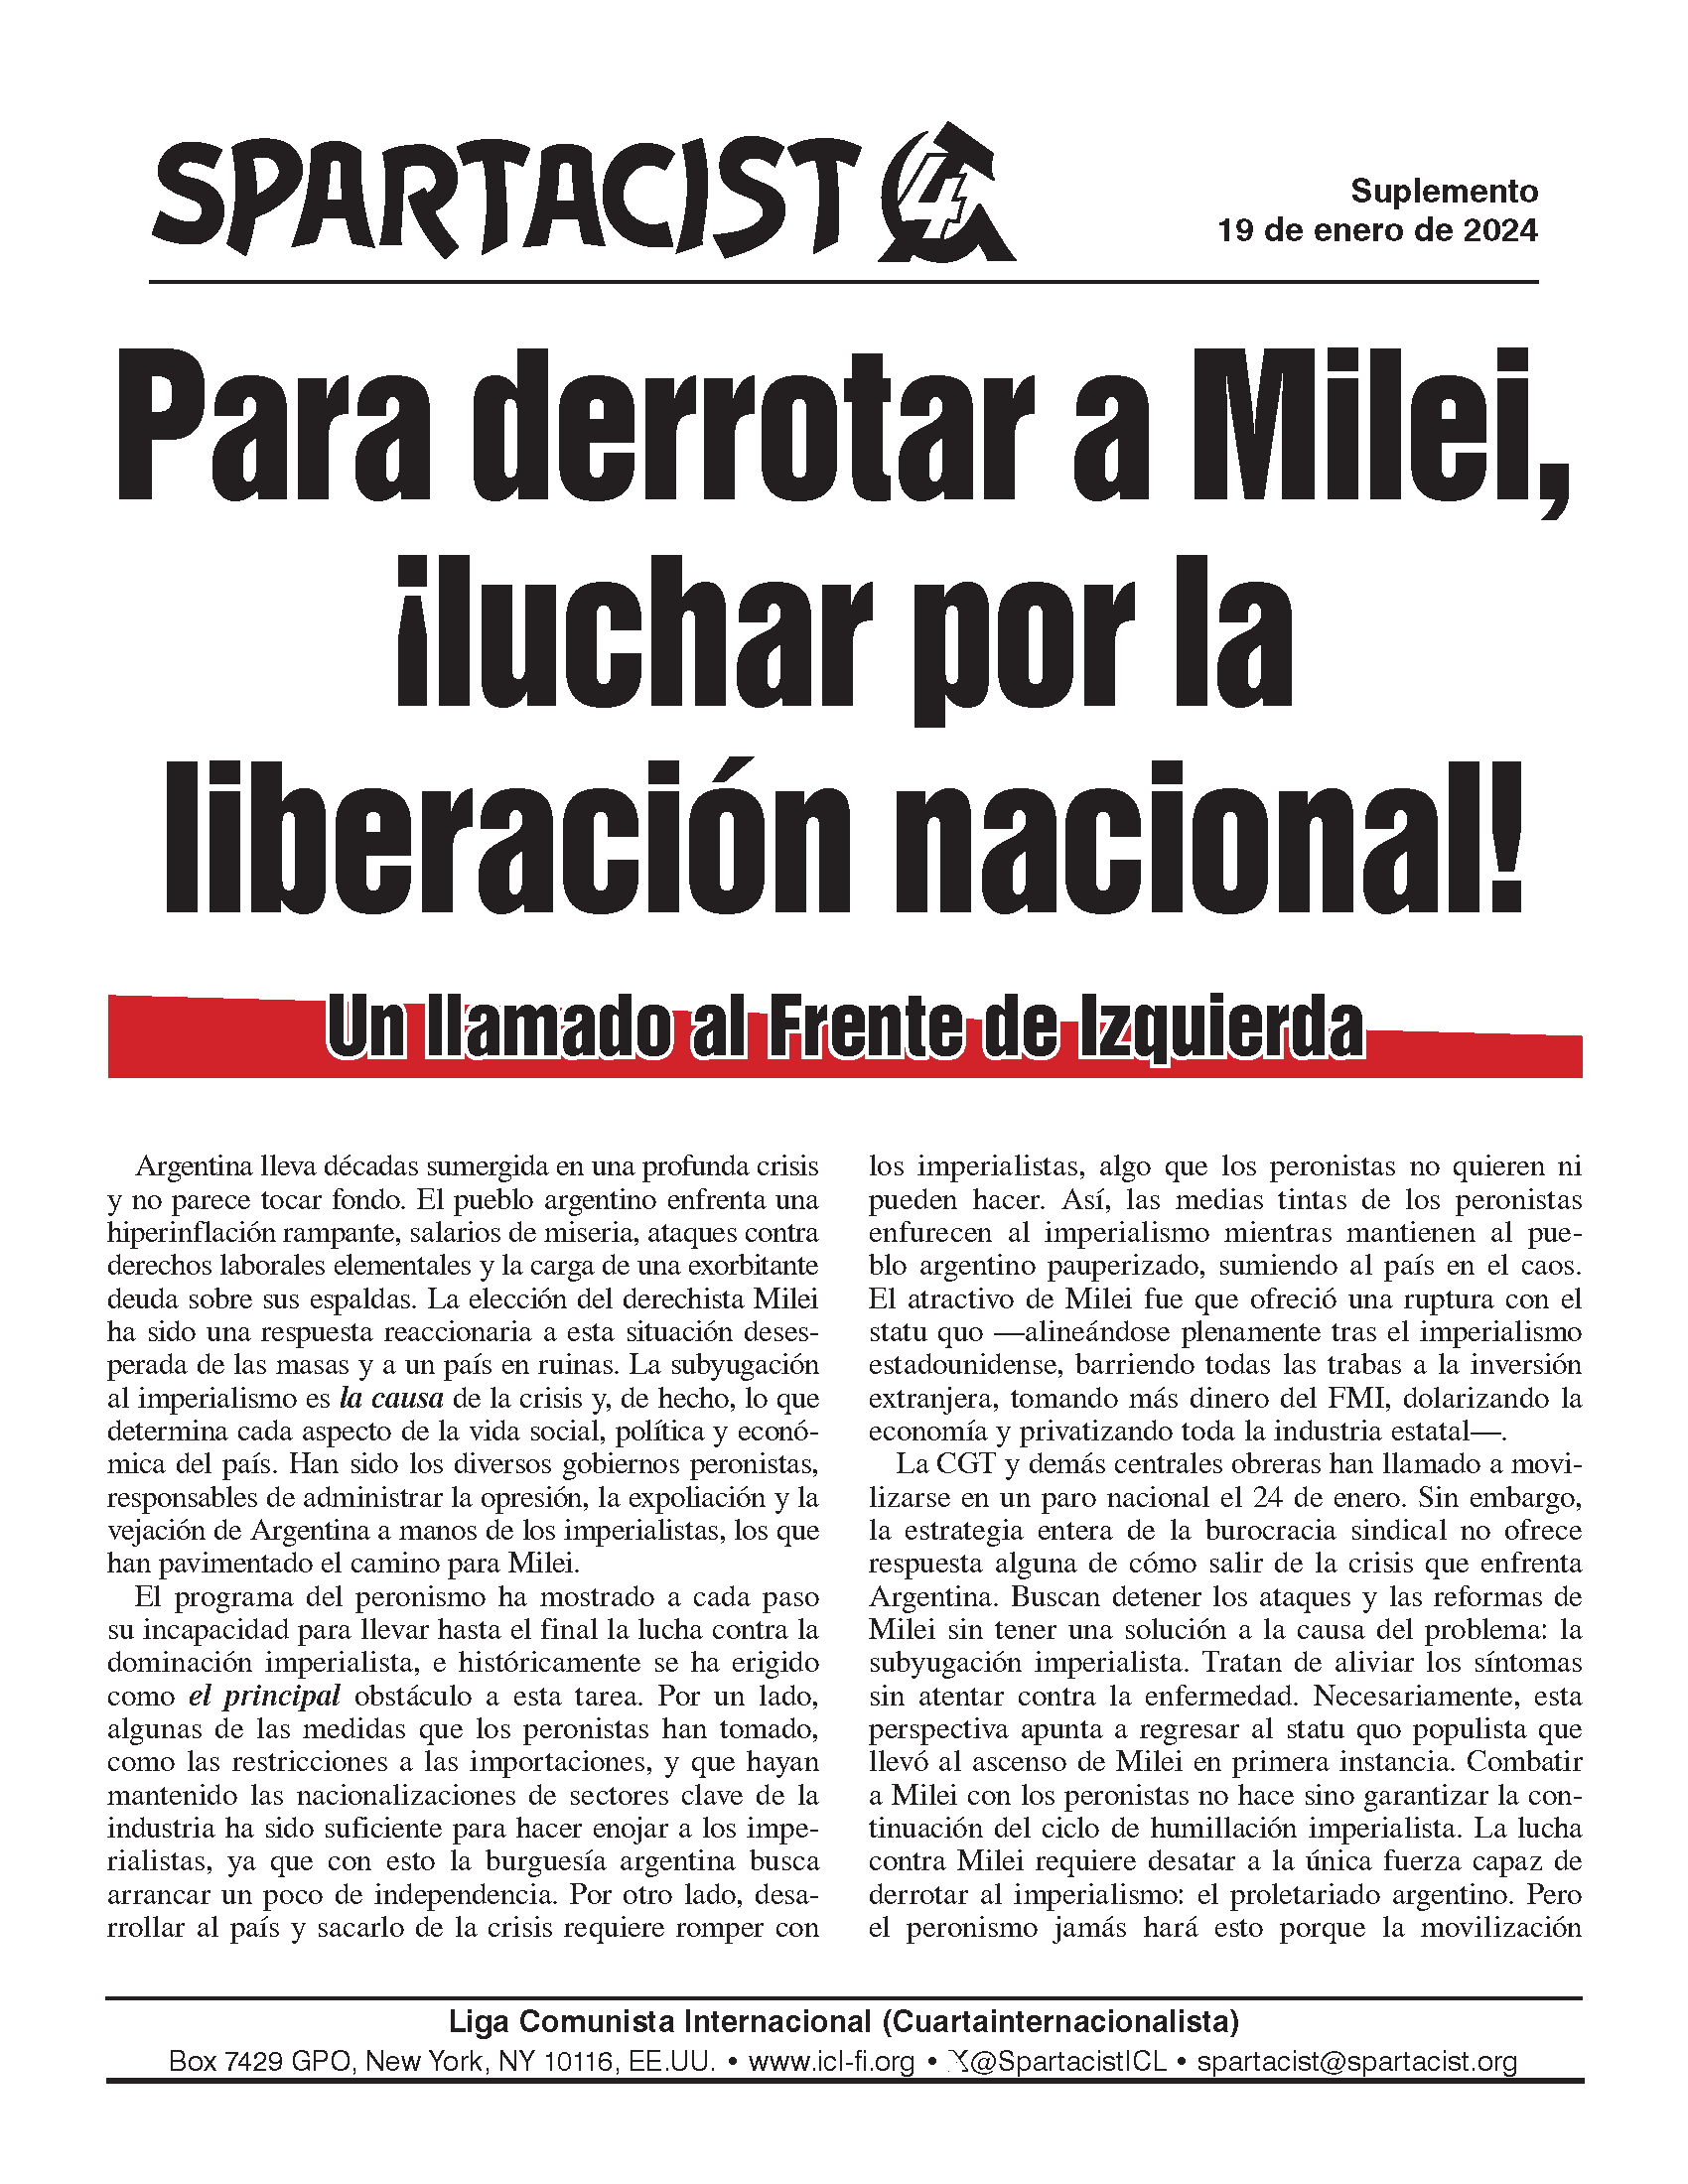 Spartacist (edición en español) supplemento  |  19 gennaio 2024